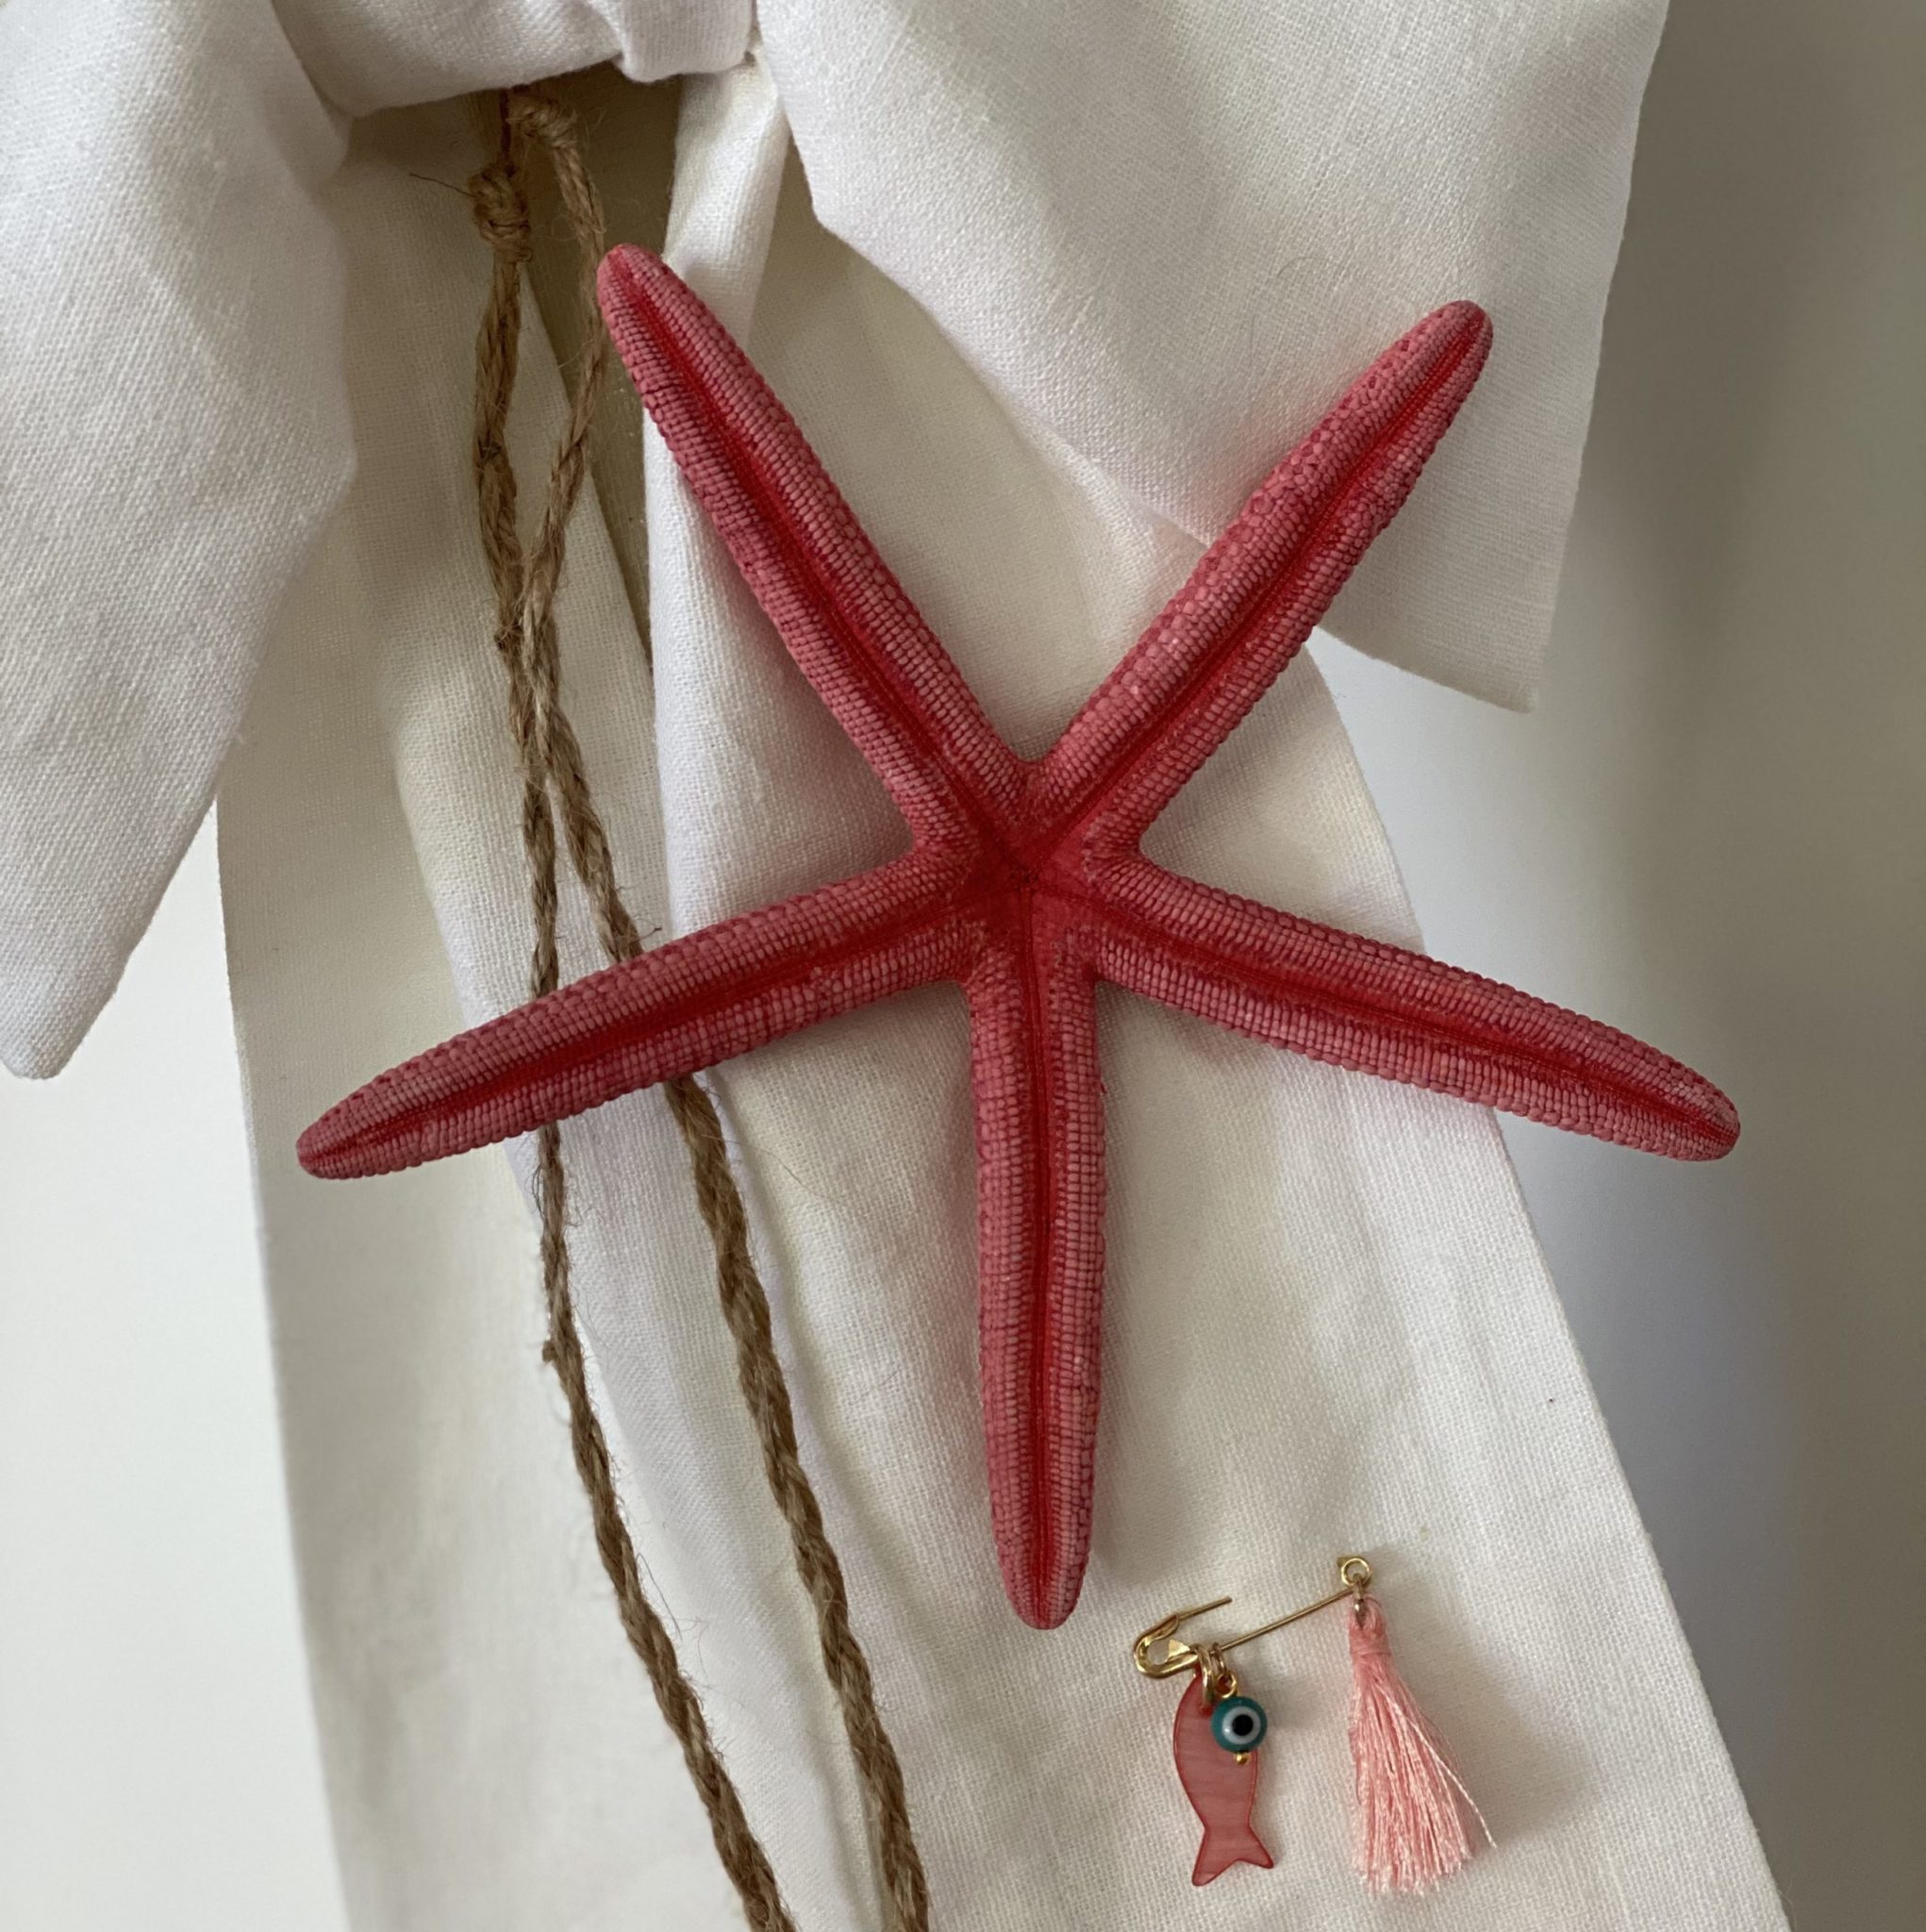 starfish-baptism-candle-closeup